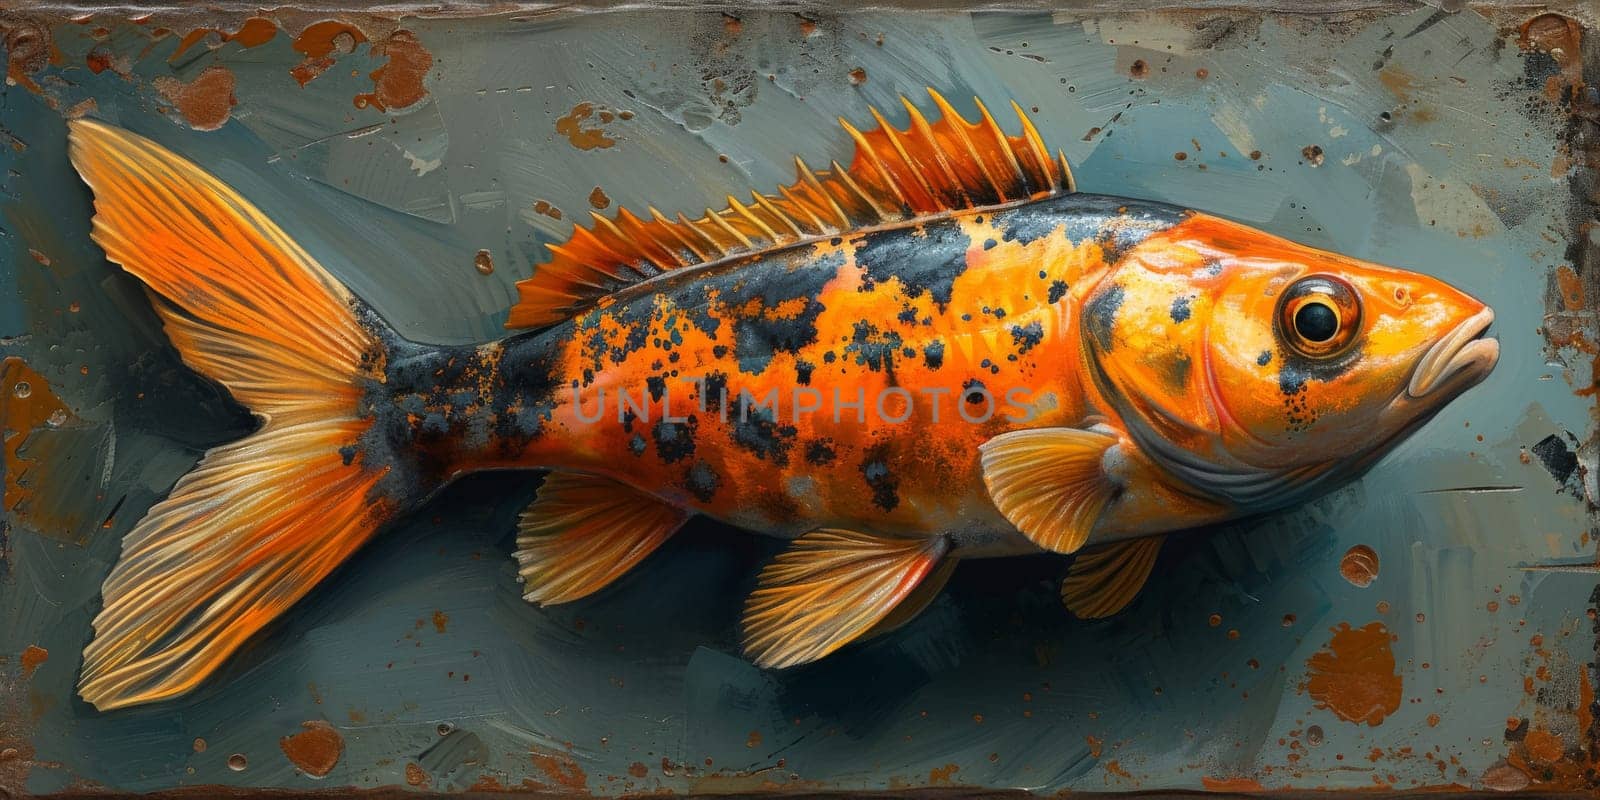 Color paint watercolor art Fish aquarium Animals wildlife illustration.